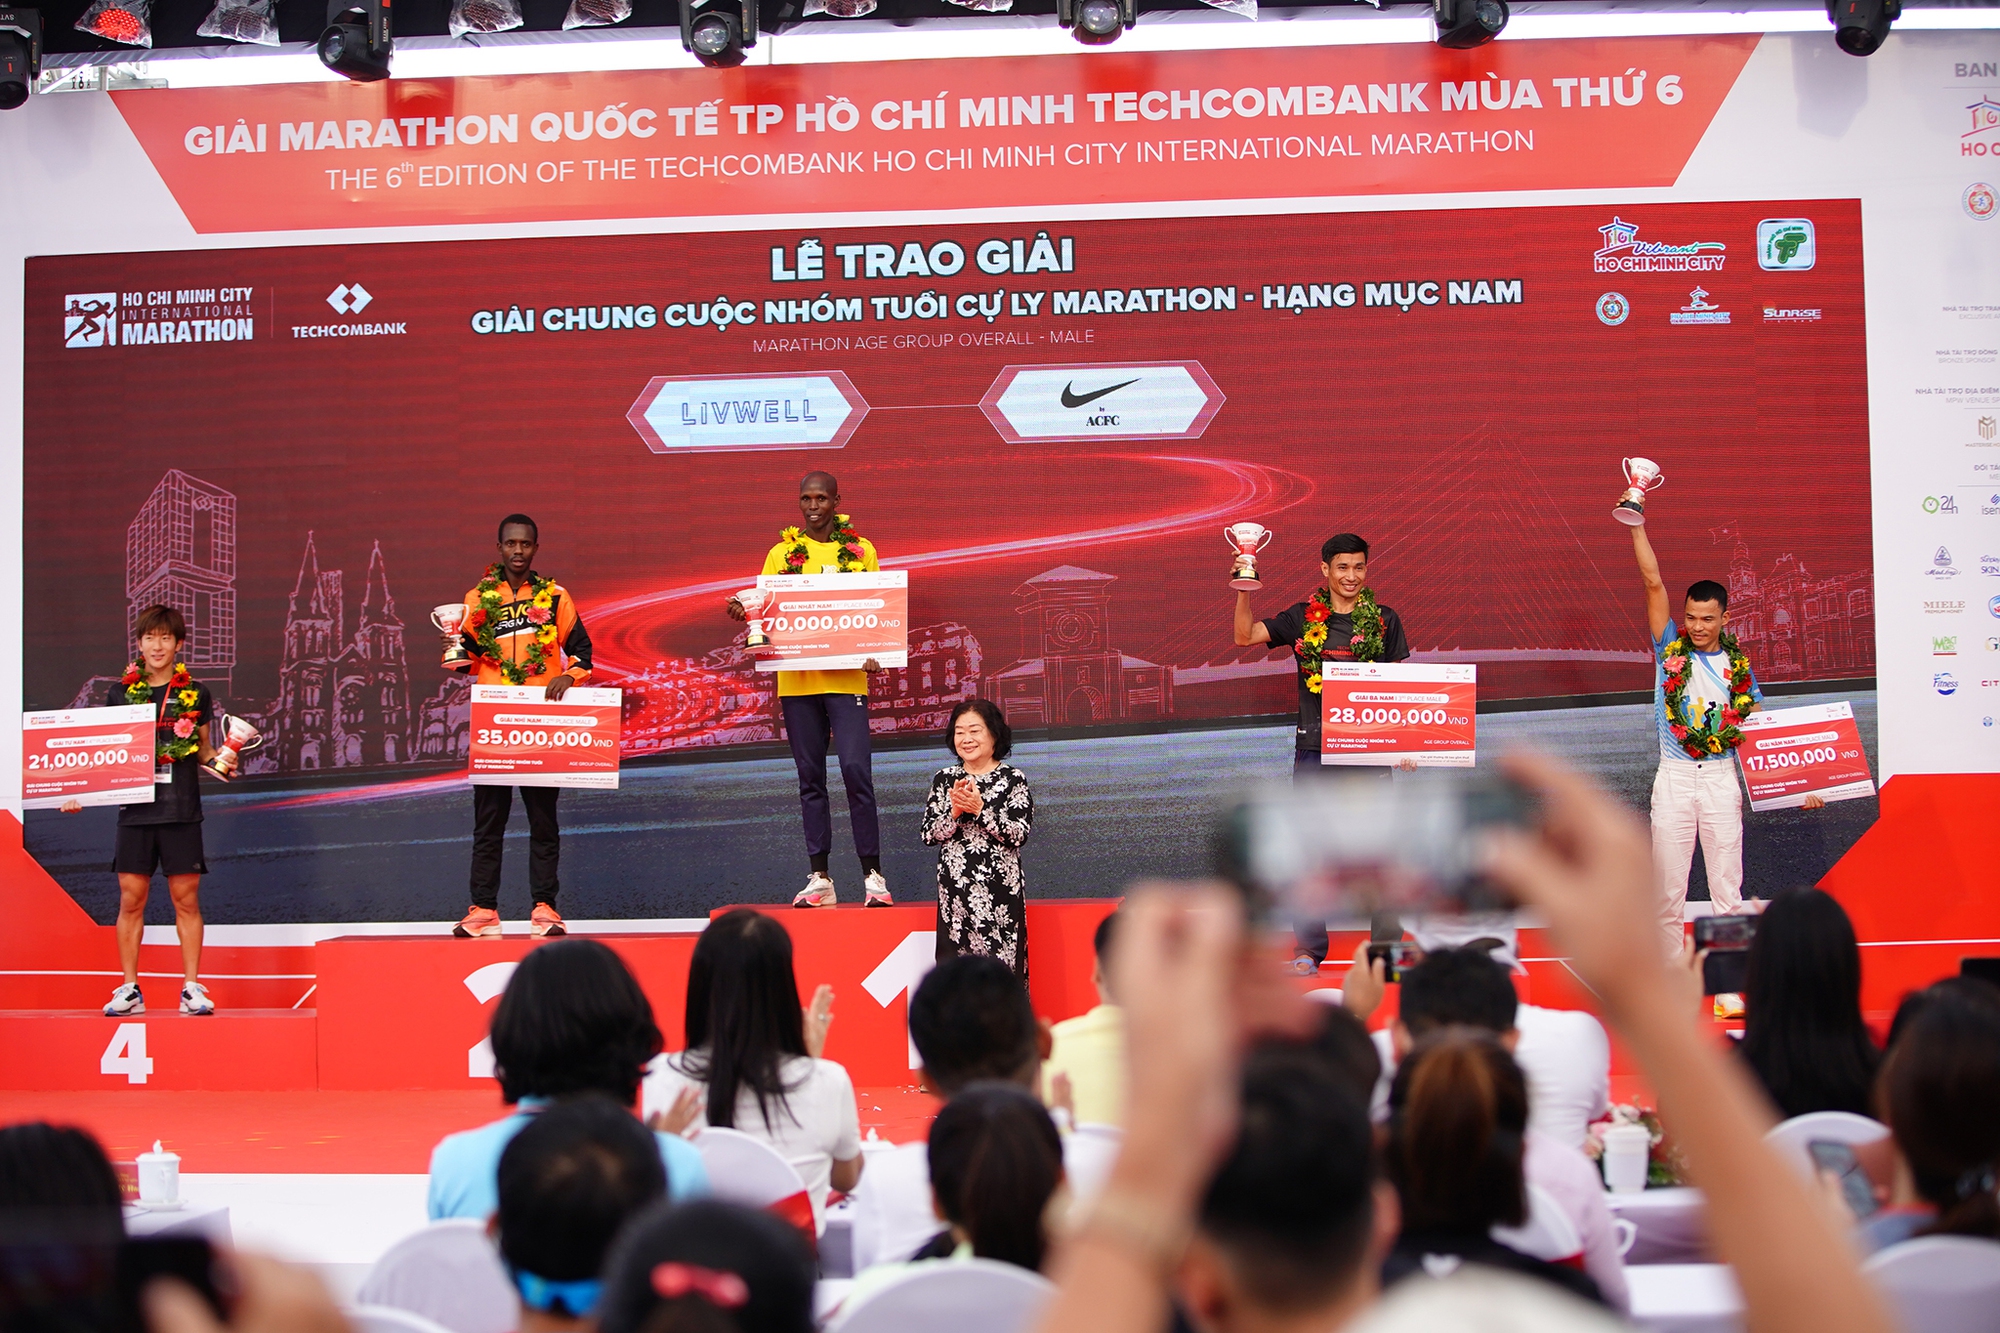 Các nữ Runner Việt Nam vượt trội trong giải Marathon Quốc tế thành phố Hồ Chí Minh Techcombank mùa thứ 6- Ảnh 9.